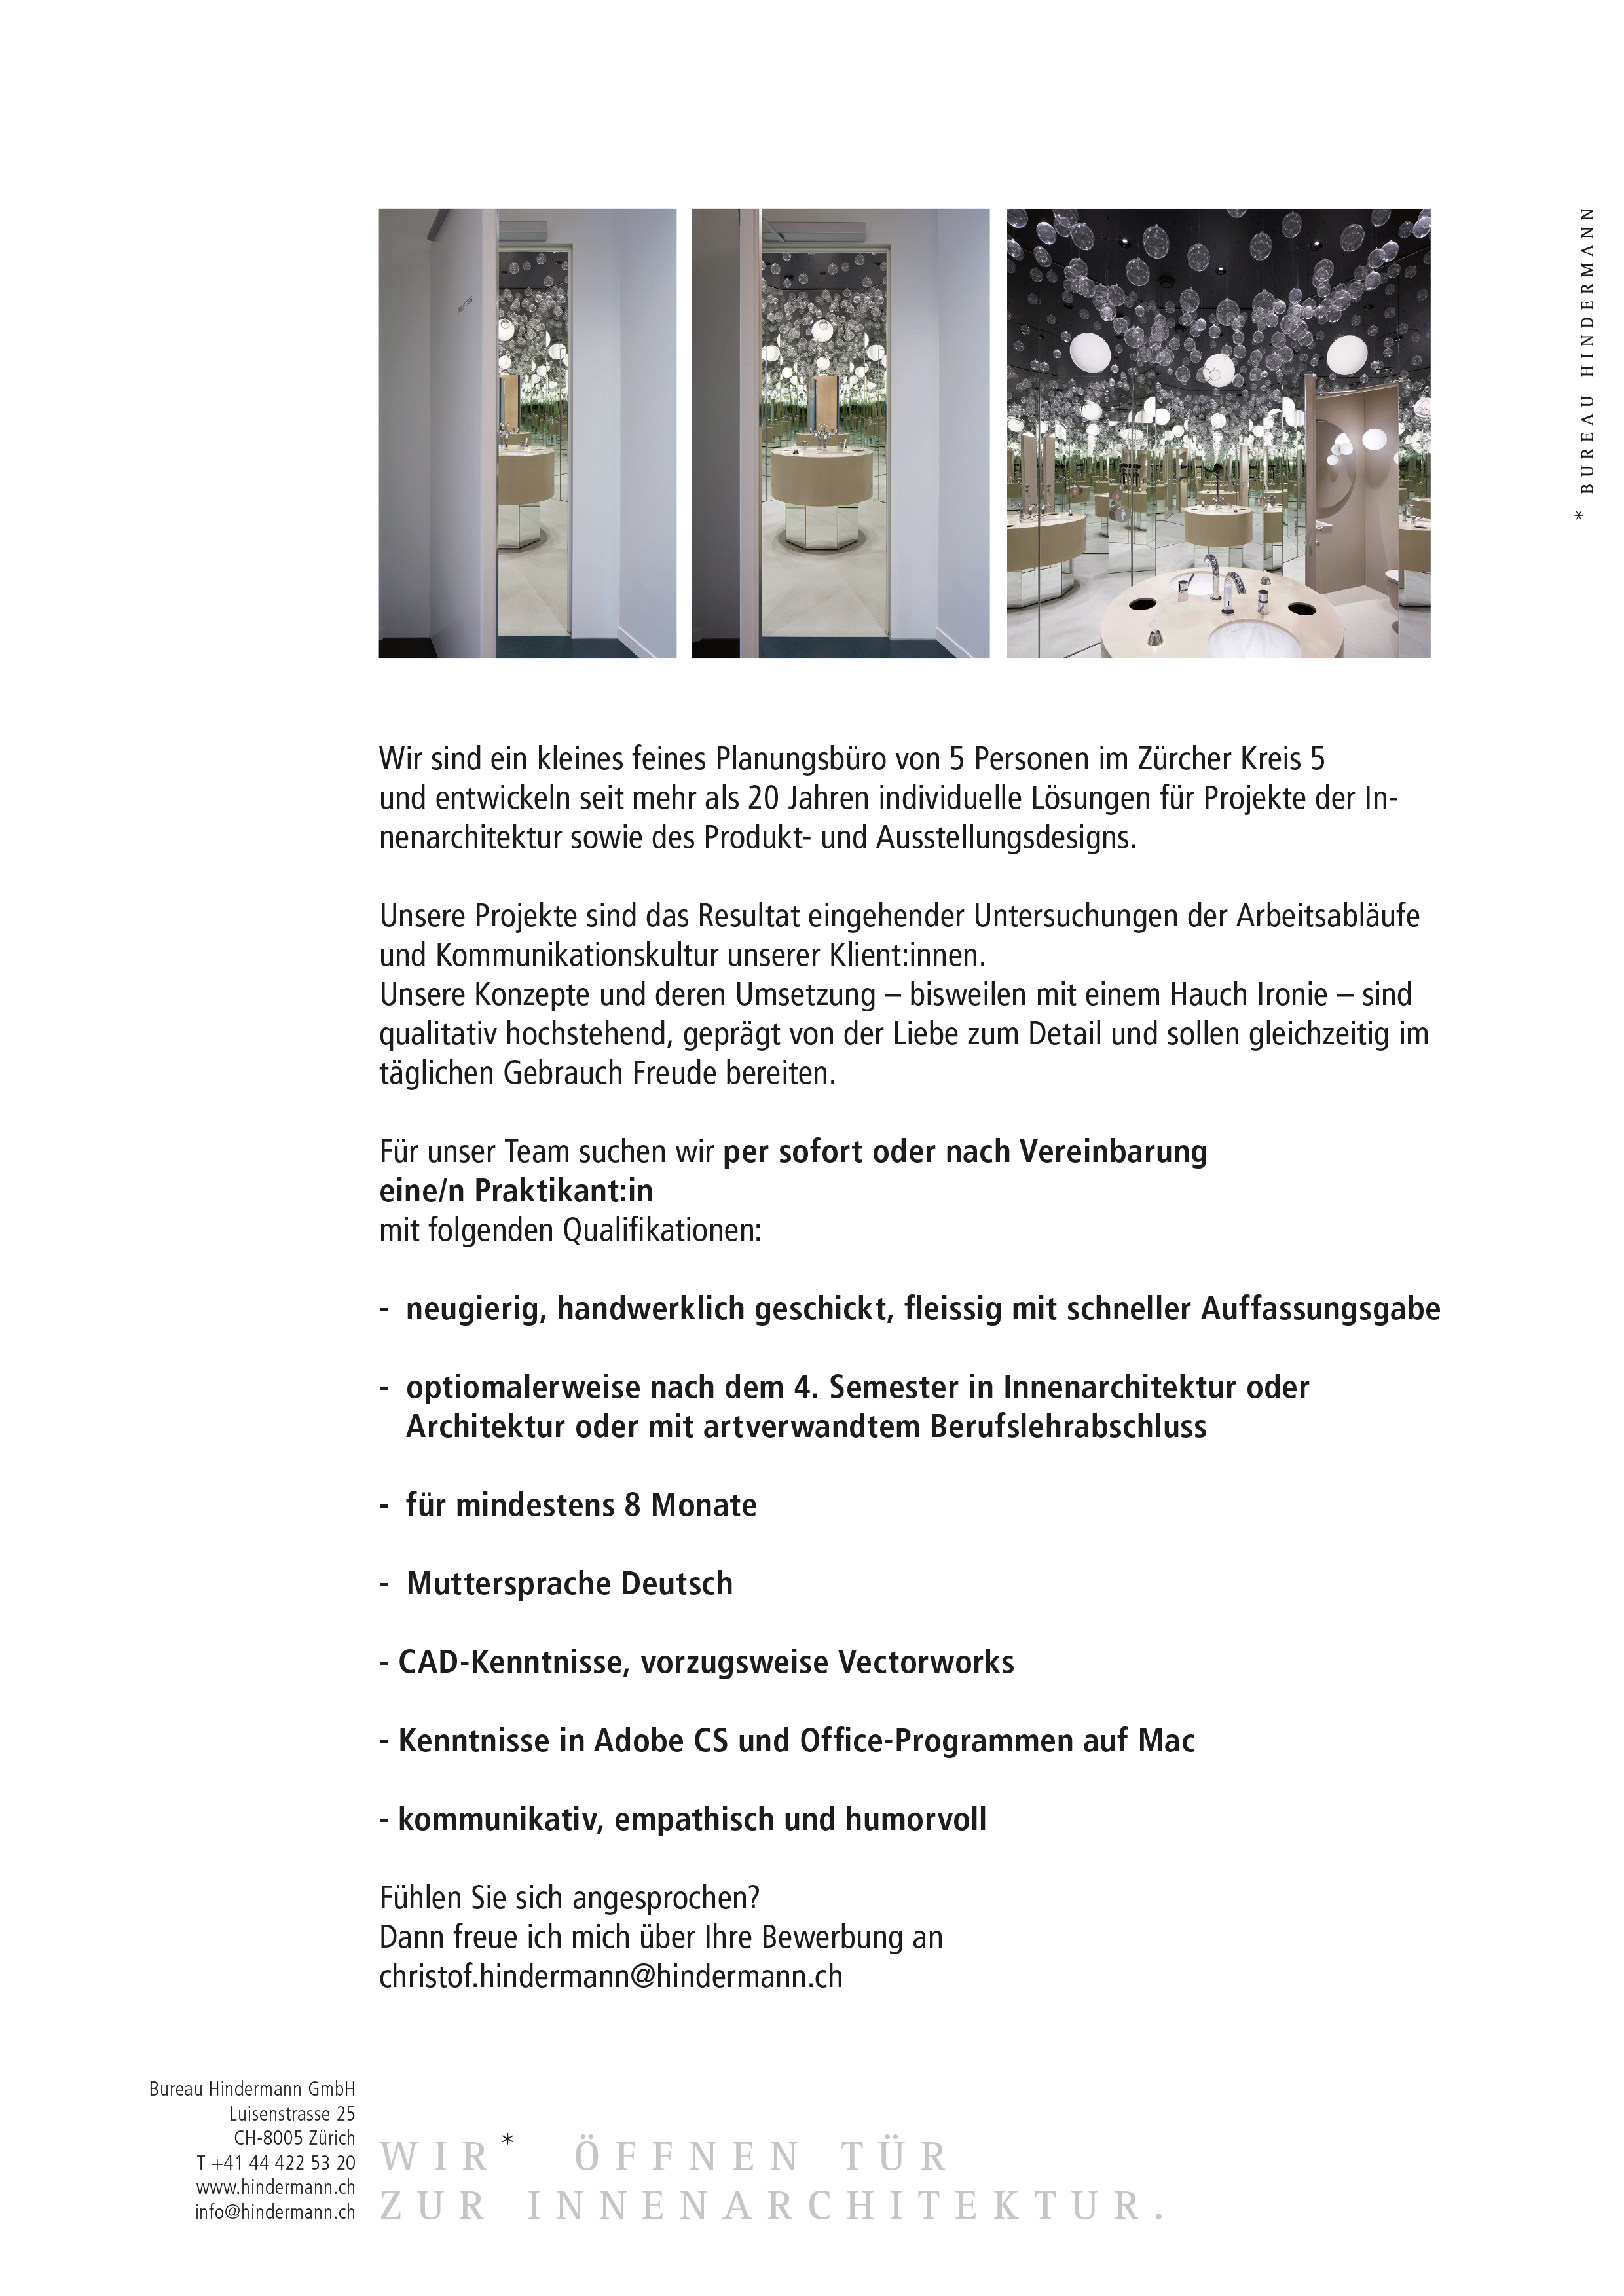 Bureau Hindermann GmbH – Innenarchitektur, Produkt- und Ausstelungsdesign